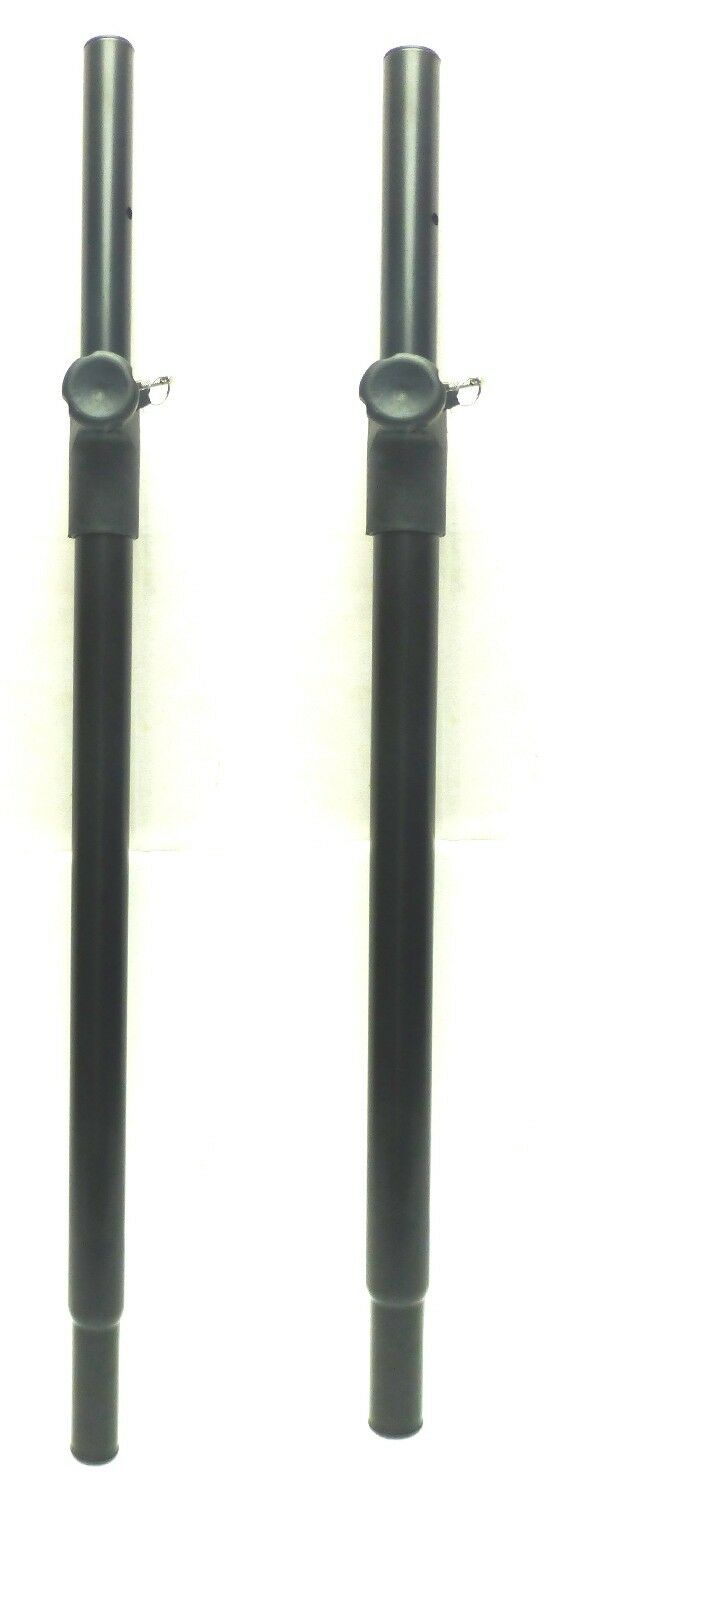 (2) Two Sub Woofer To Speaker Pole Adjustable Extension Shaft For 1 3/8" Speaker